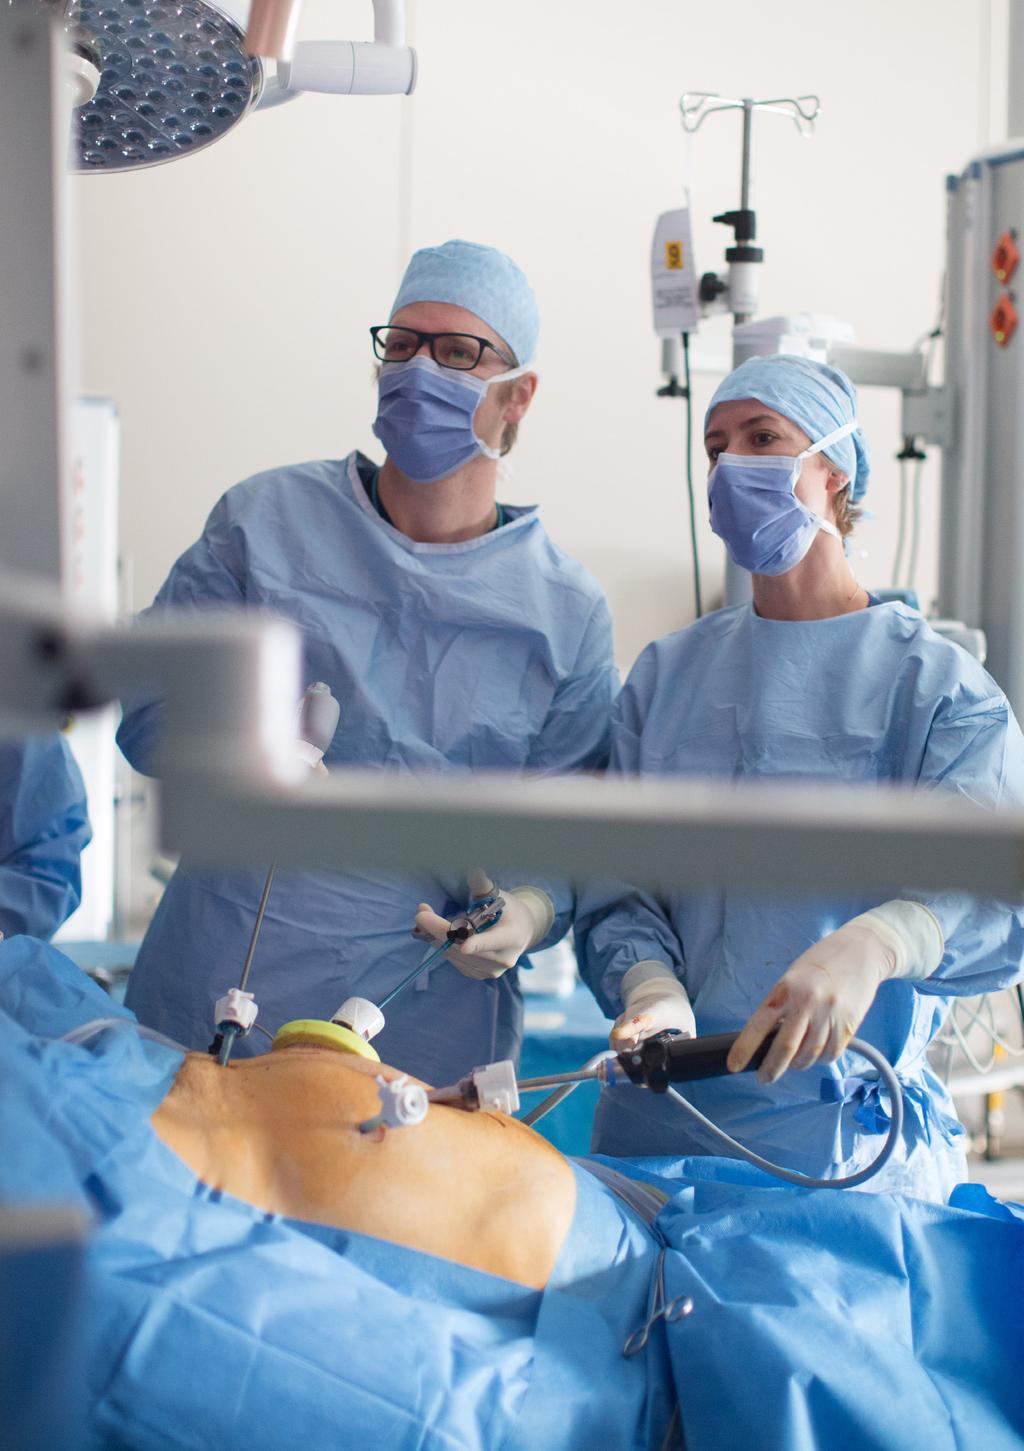 14 ERAS bij dikkedarmchirurgie 11. Notities Welke soort operatie ondergaat u?